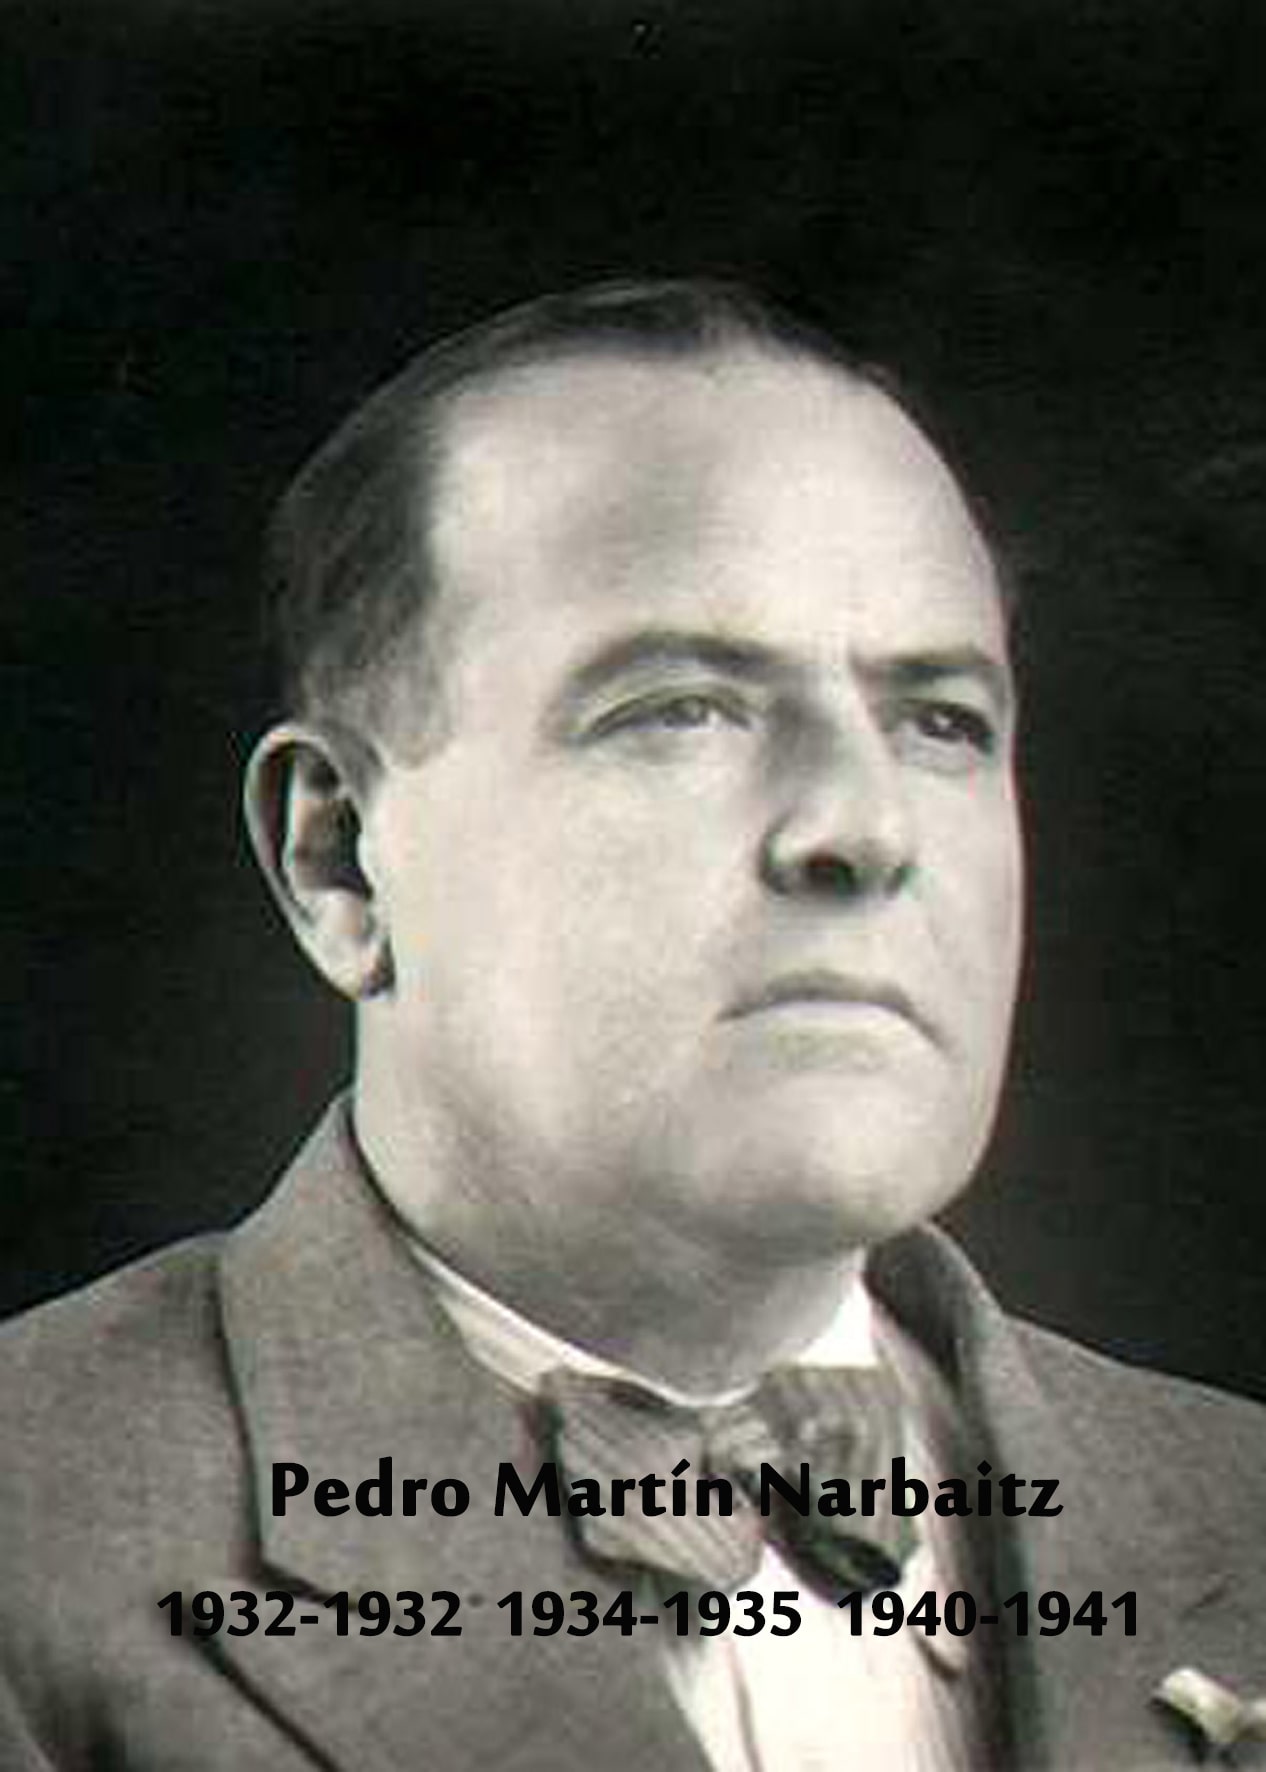 PEDRO MARTIN NARBAITZ